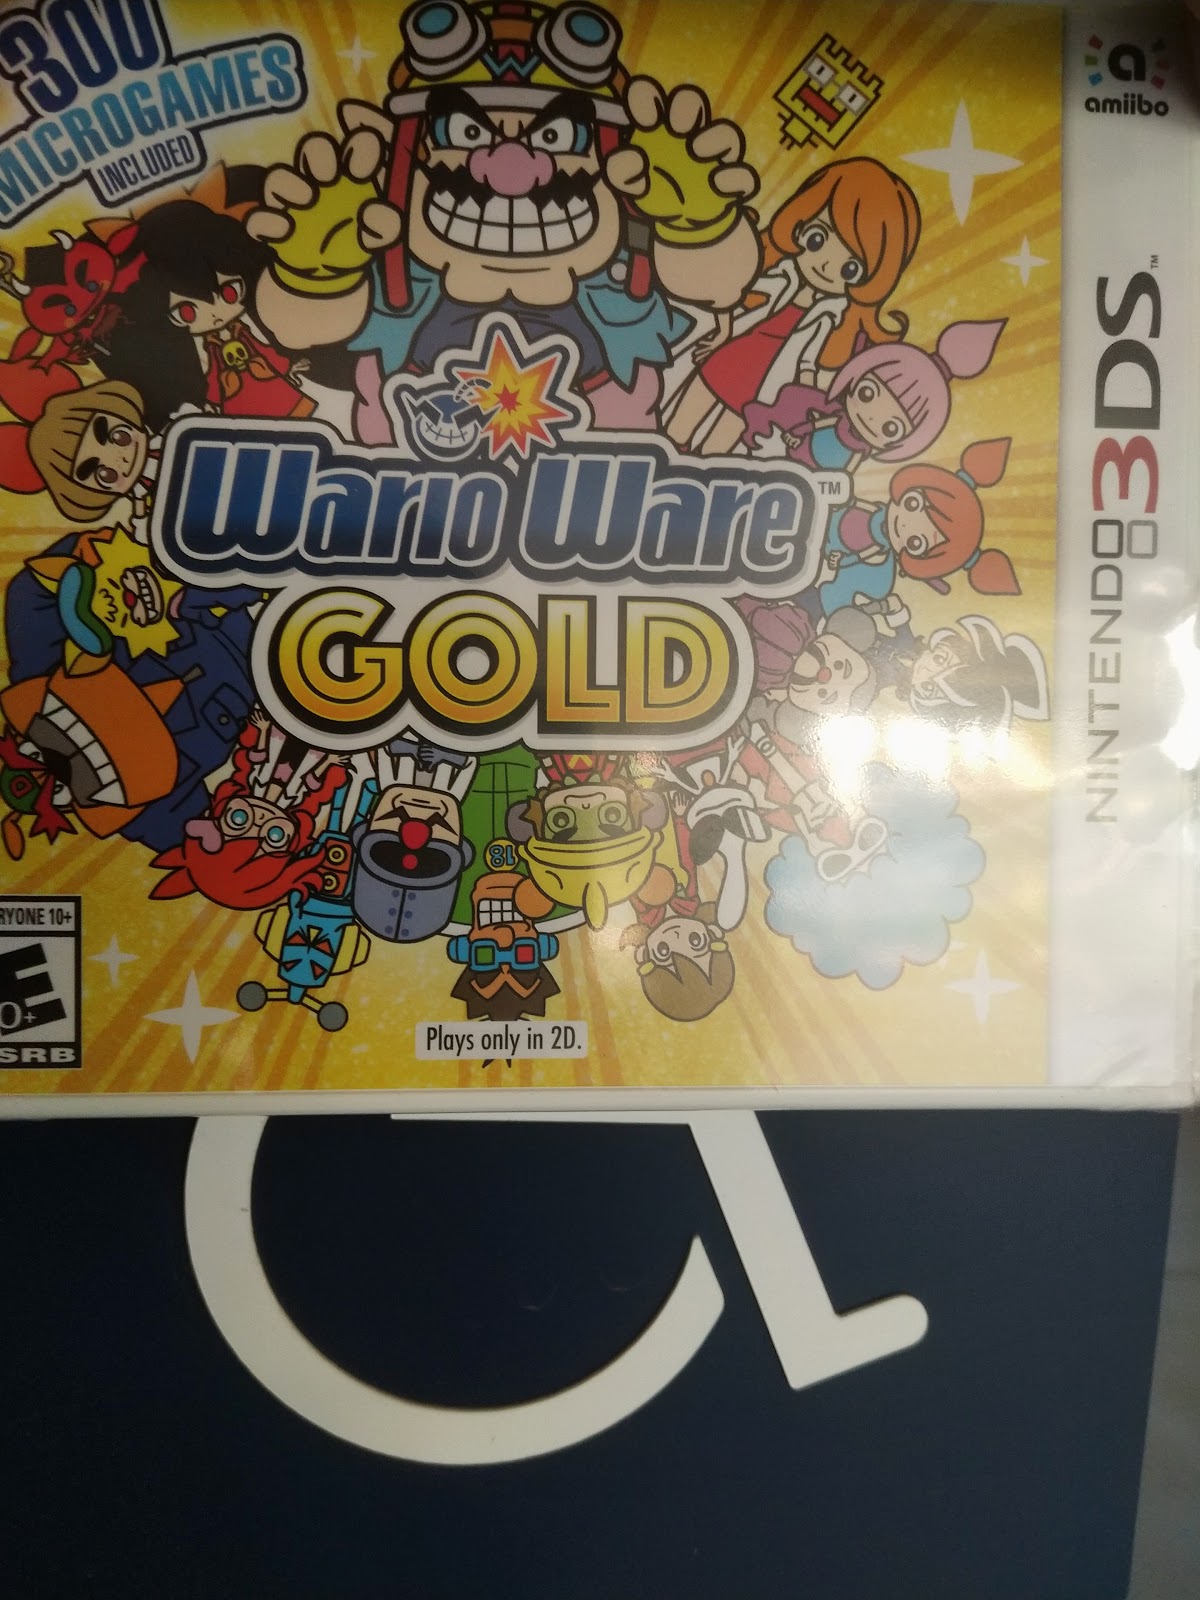 Warioware Gold Full Game